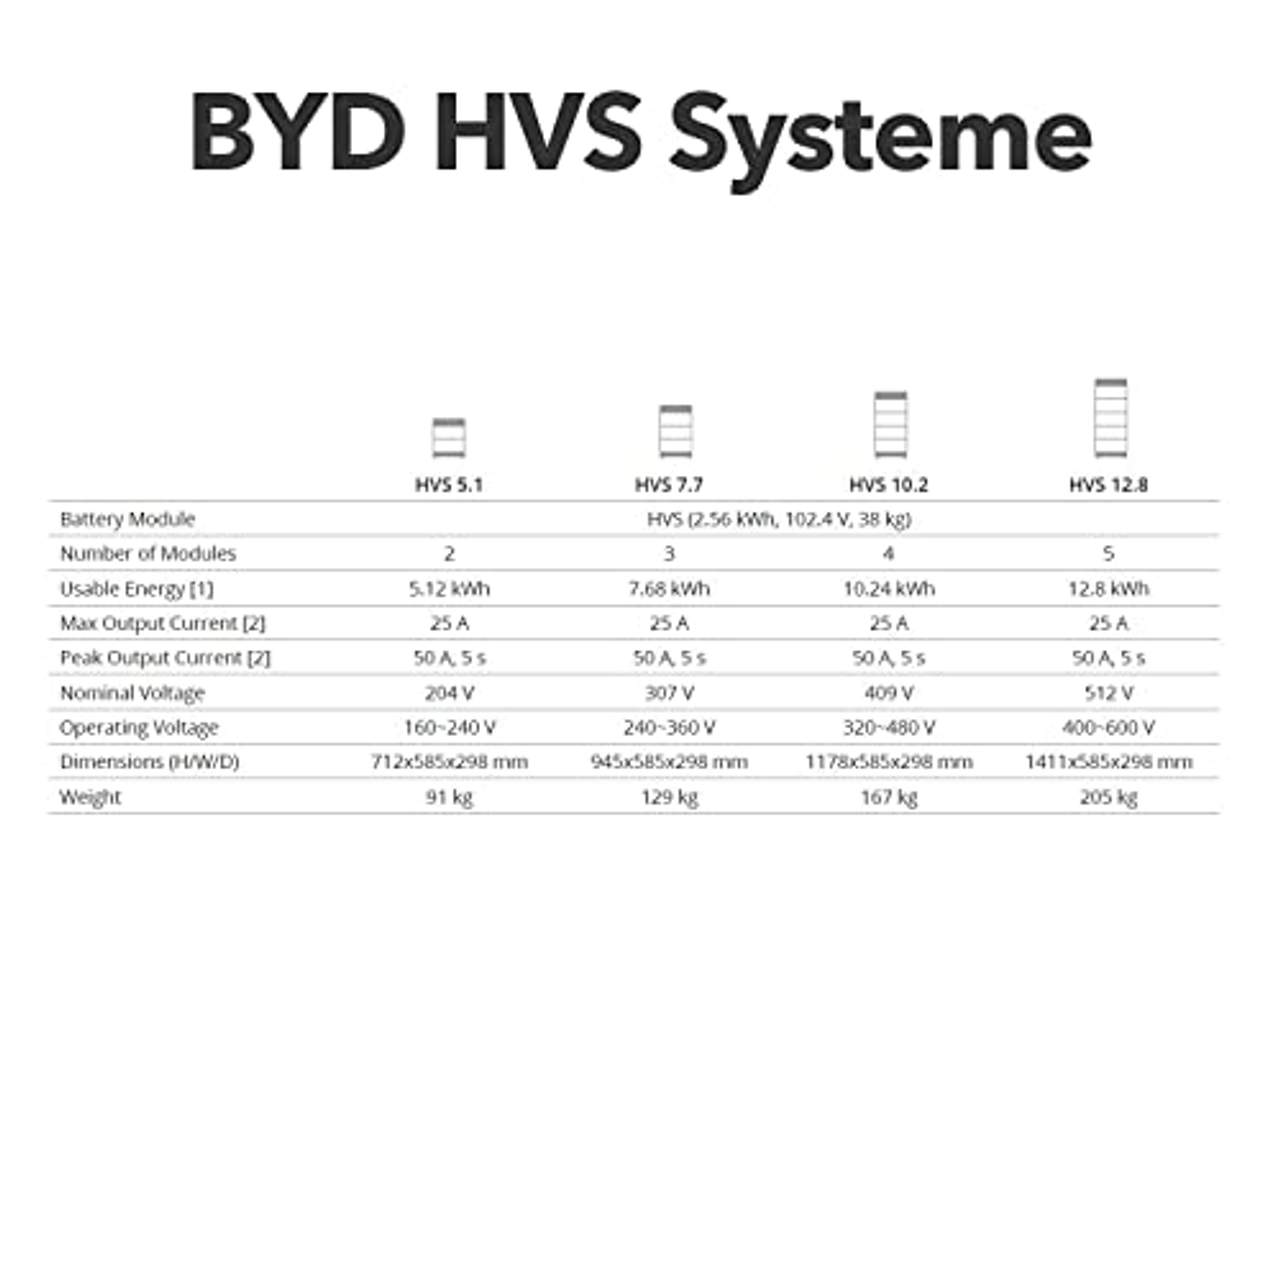 Power Werk BYD HVS Speicher mit 12.8 kWh